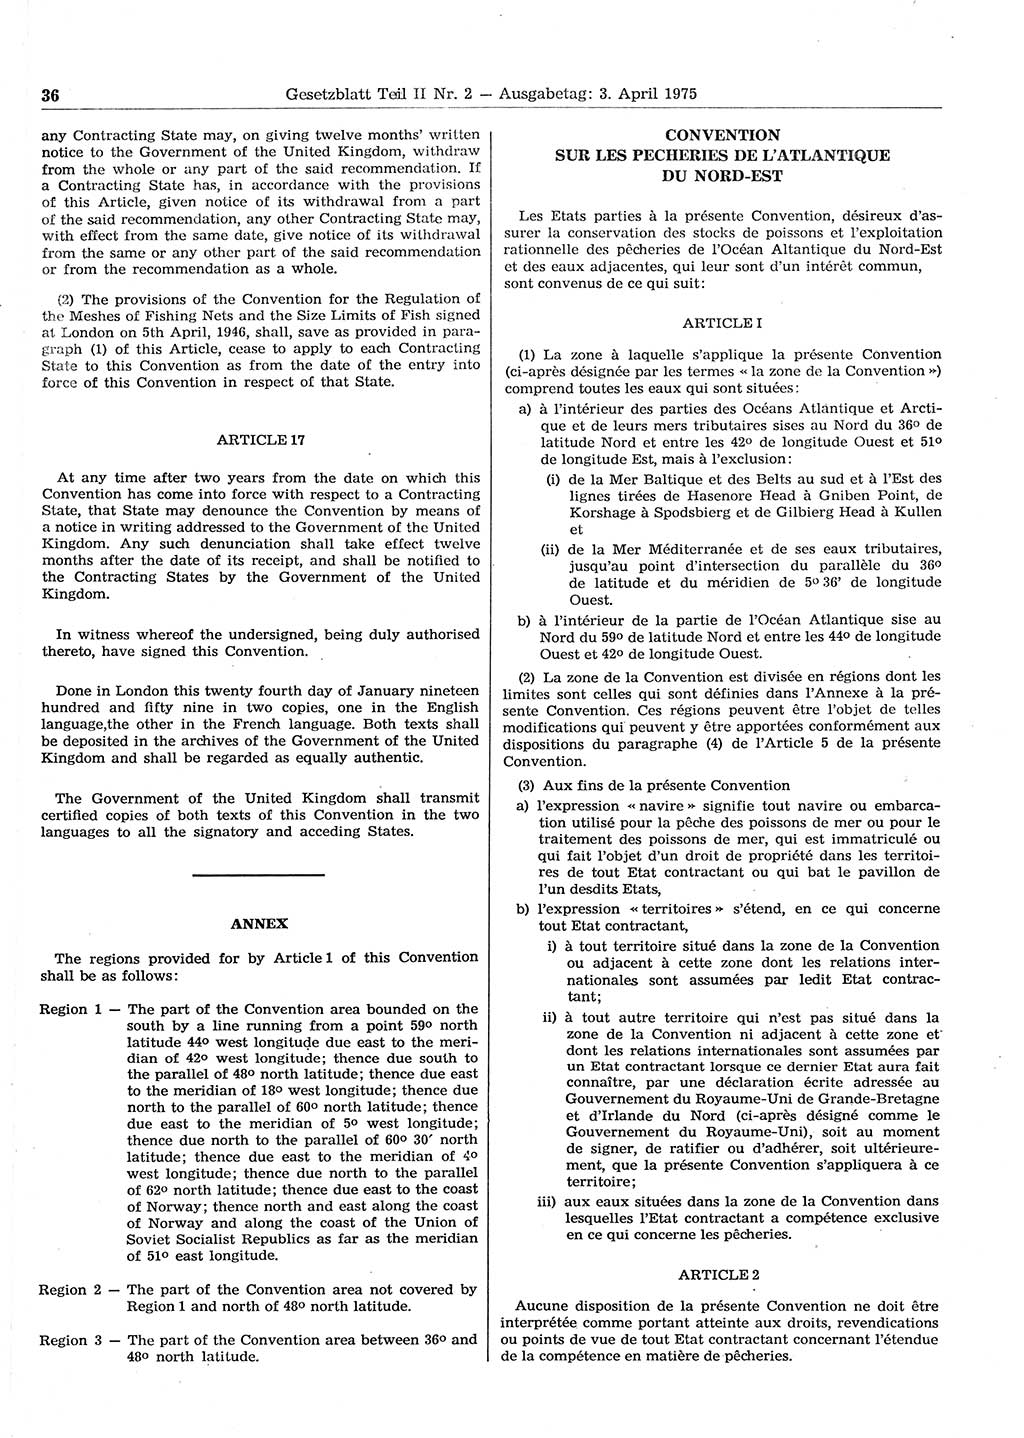 Gesetzblatt (GBl.) der Deutschen Demokratischen Republik (DDR) Teil ⅠⅠ 1975, Seite 36 (GBl. DDR ⅠⅠ 1975, S. 36)